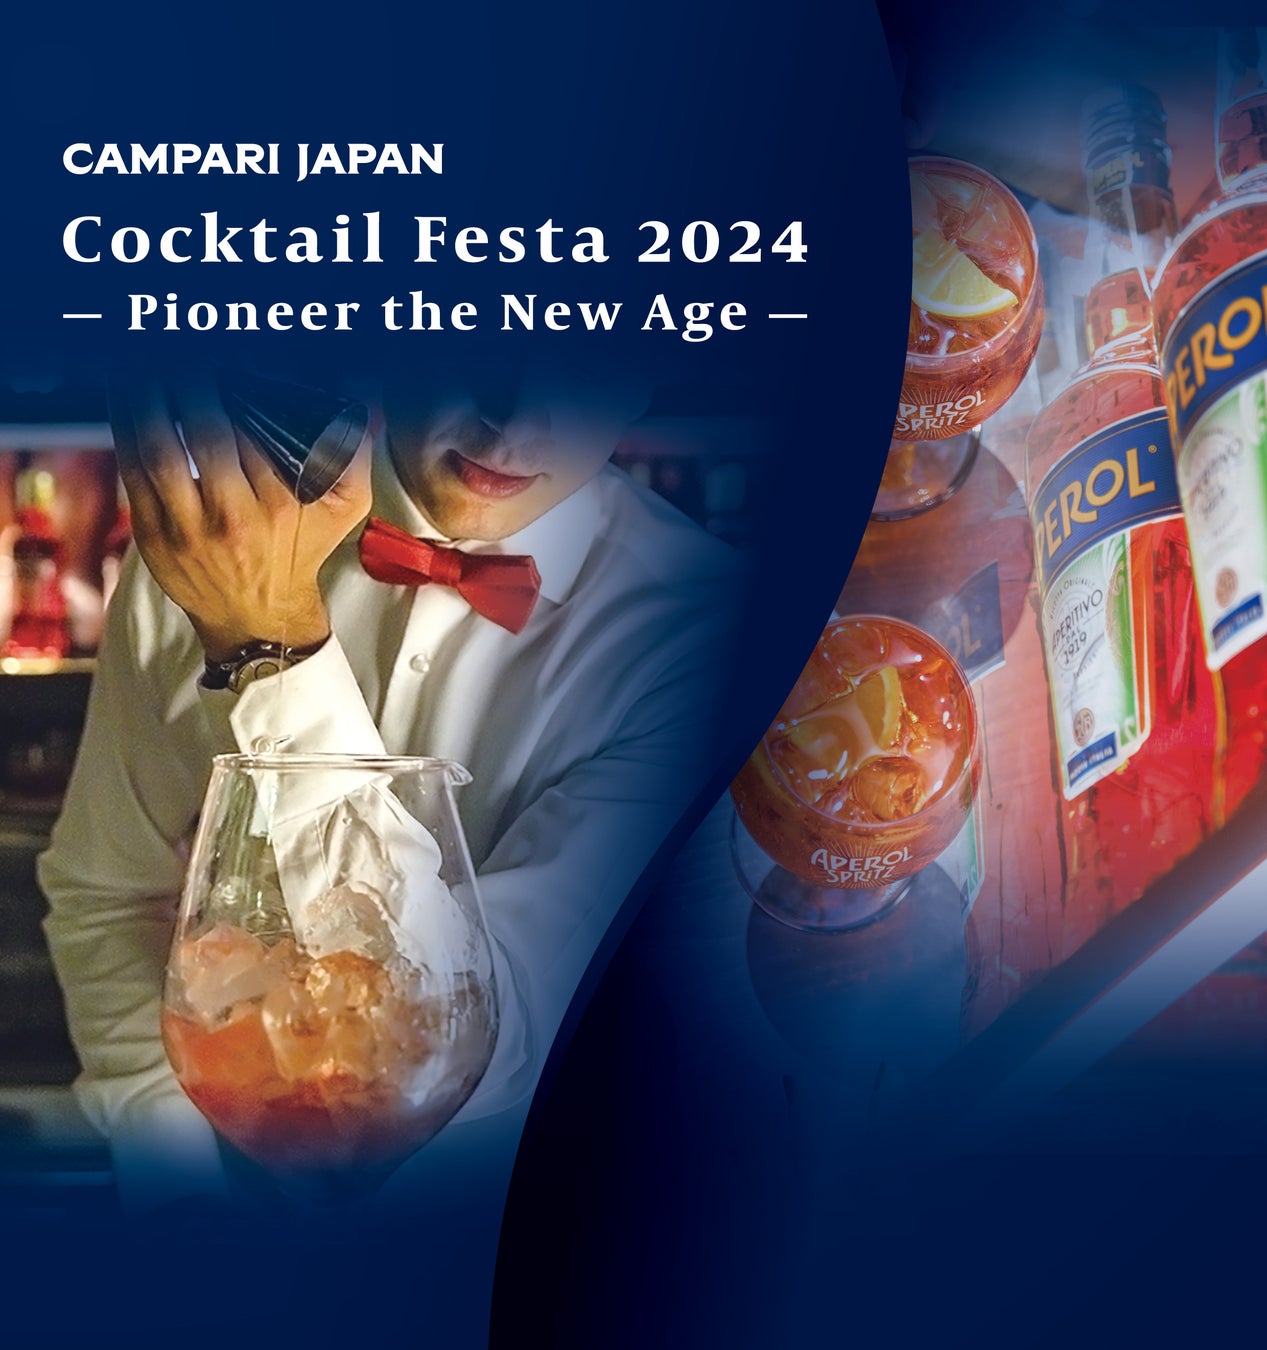 酒類・飲食業界向けイベント「Campari Japan Cocktail Festa 2024 – Pioneer the New Age -」